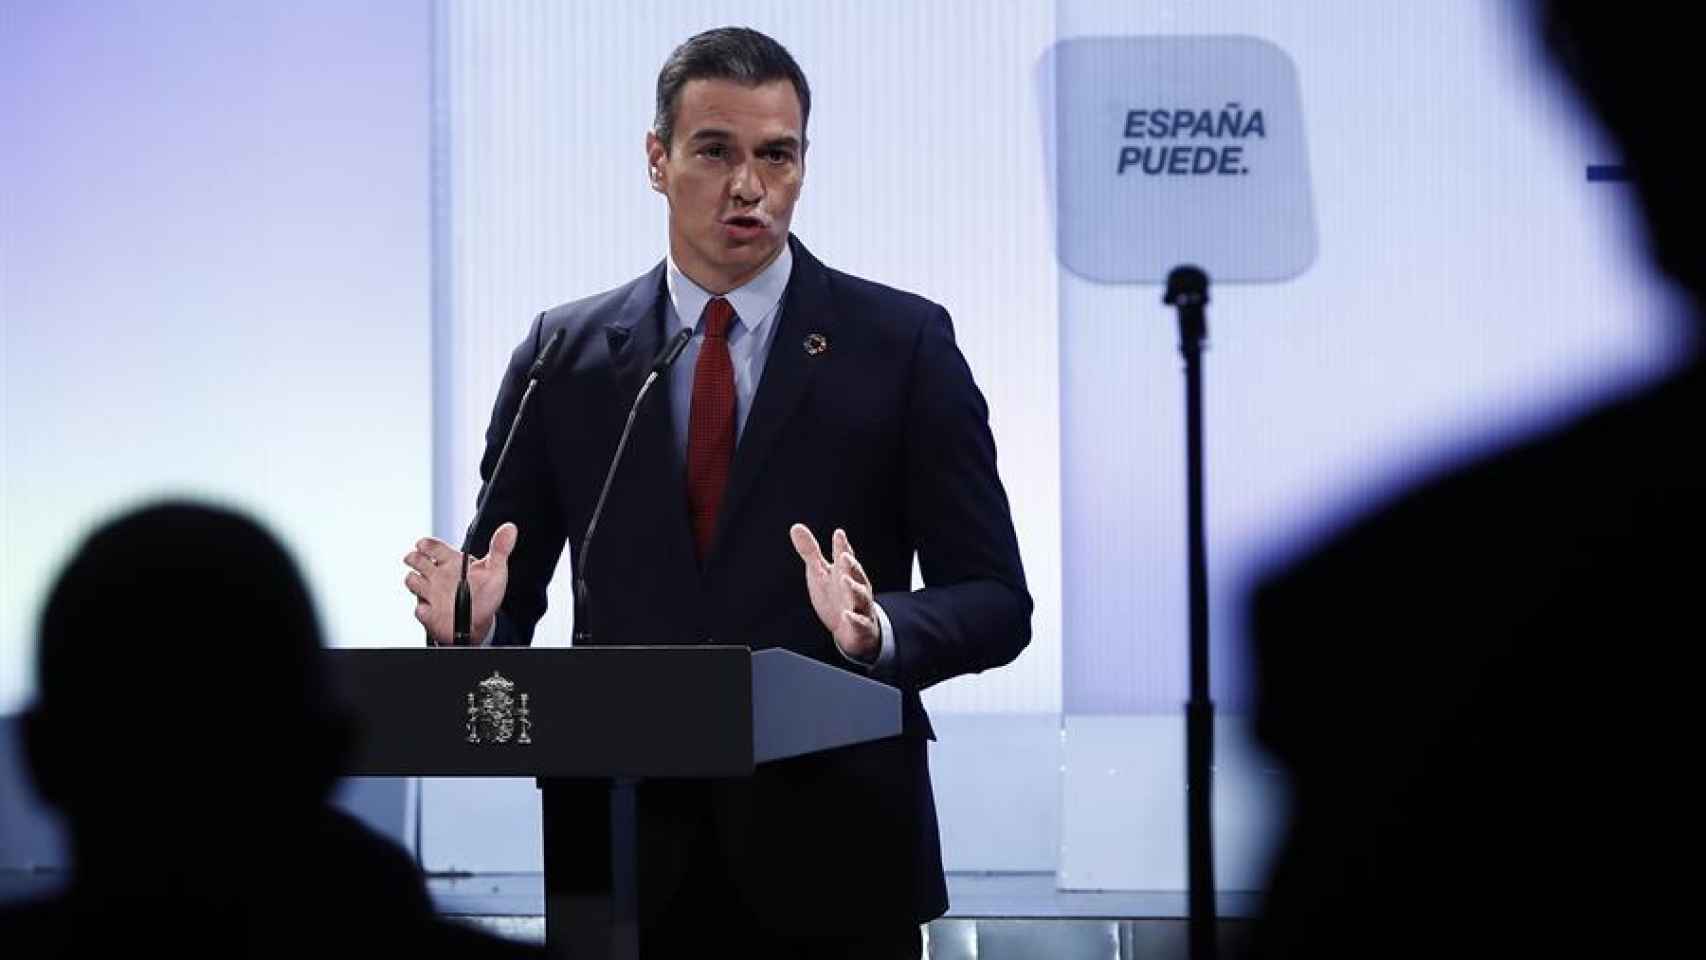 Sánchez, durante su discurso en el evento 'España puede'.